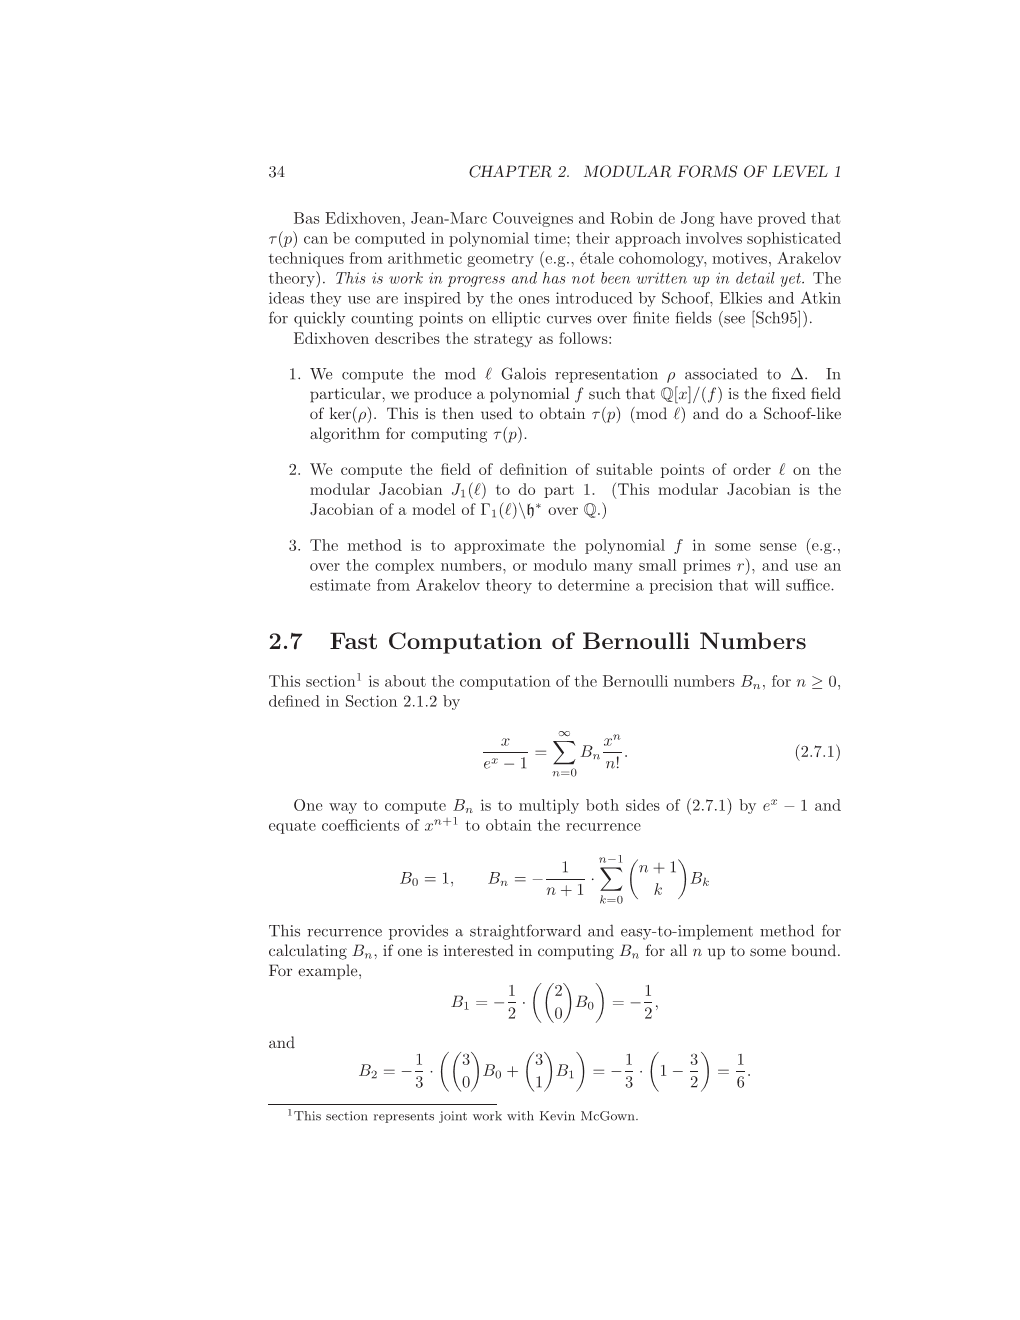 2.7 Fast Computation of Bernoulli Numbers